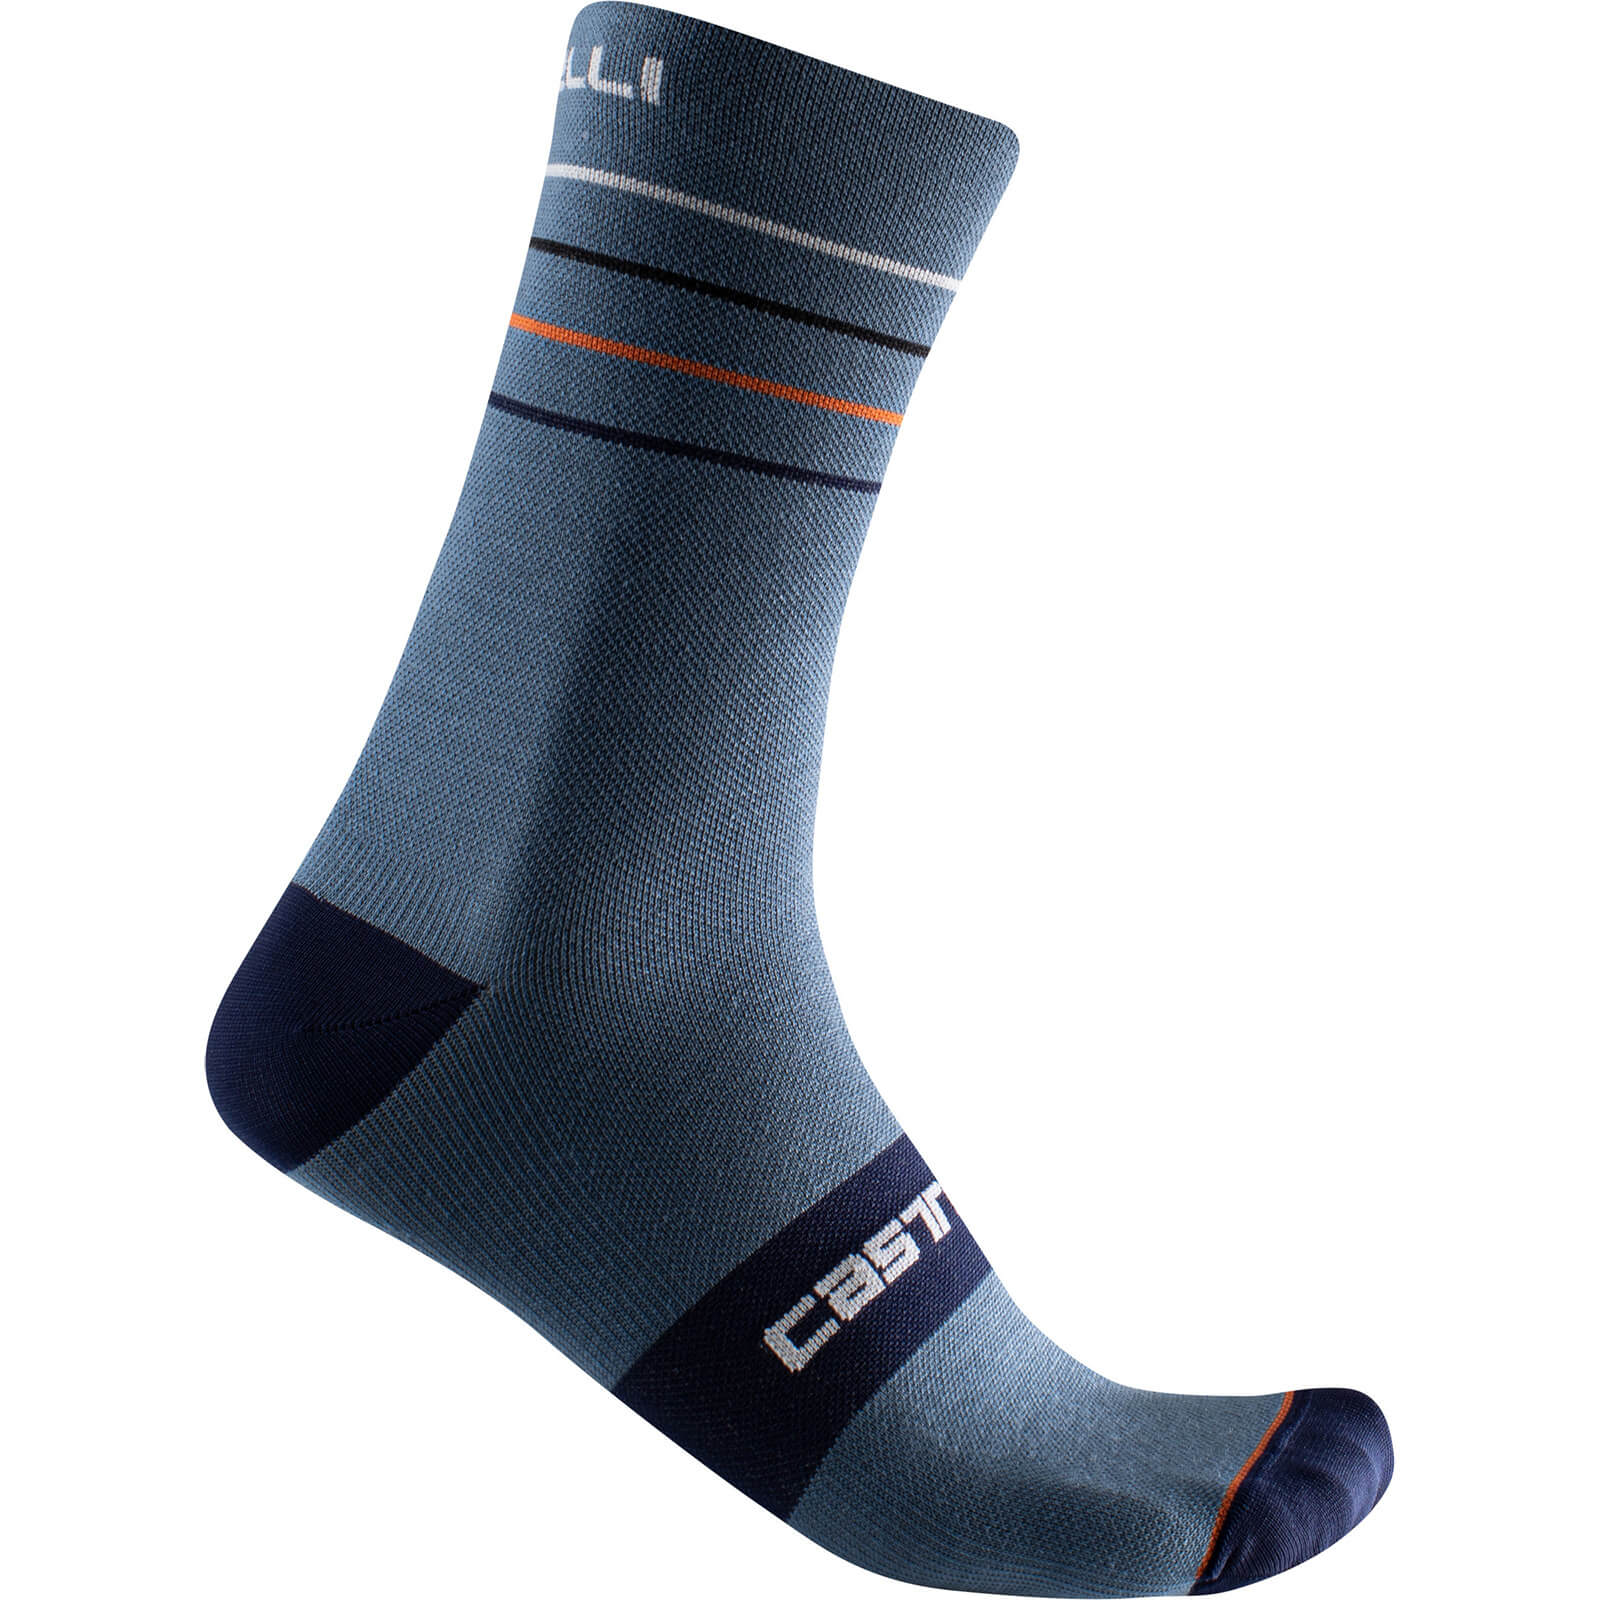 Castelli Endurance 15 Socks - S/M - Light Steel Blue/Pop Orange/White